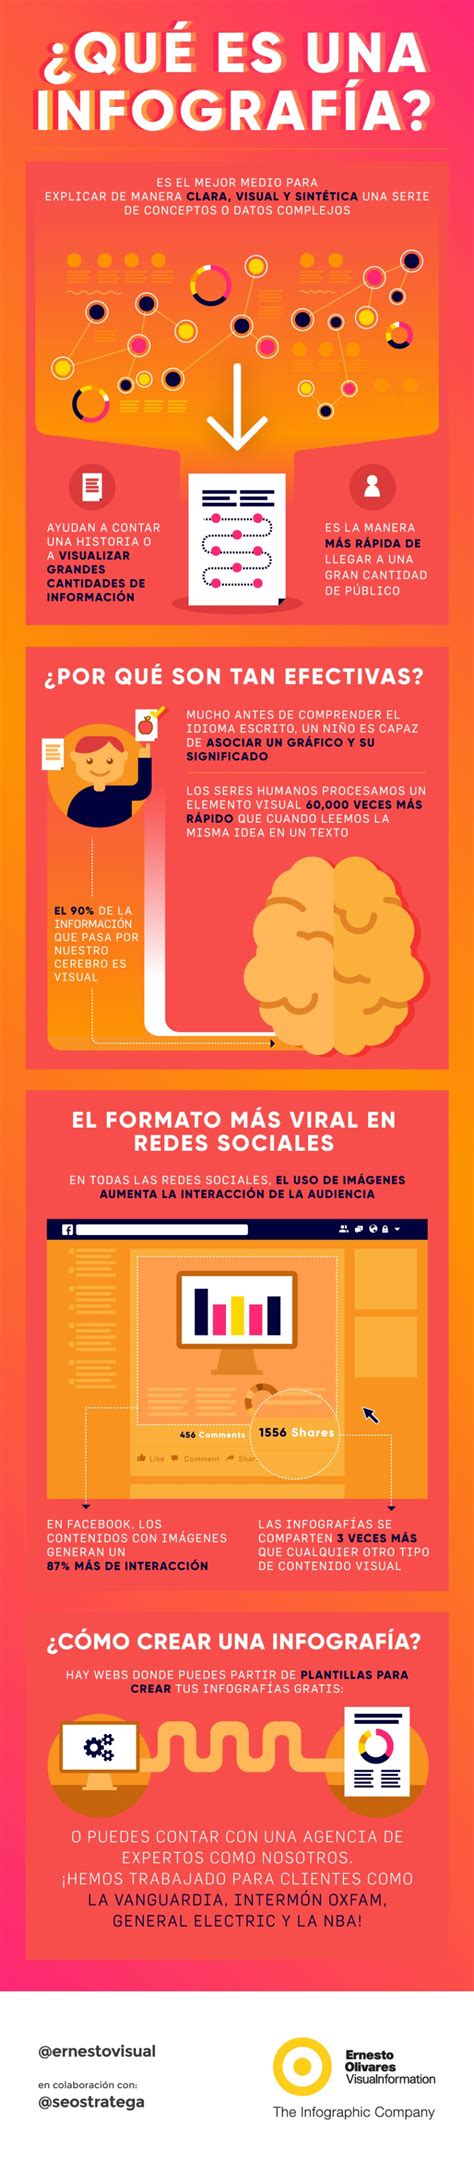 Qué Es Una Infografía Infografia Infographic Design Marketing